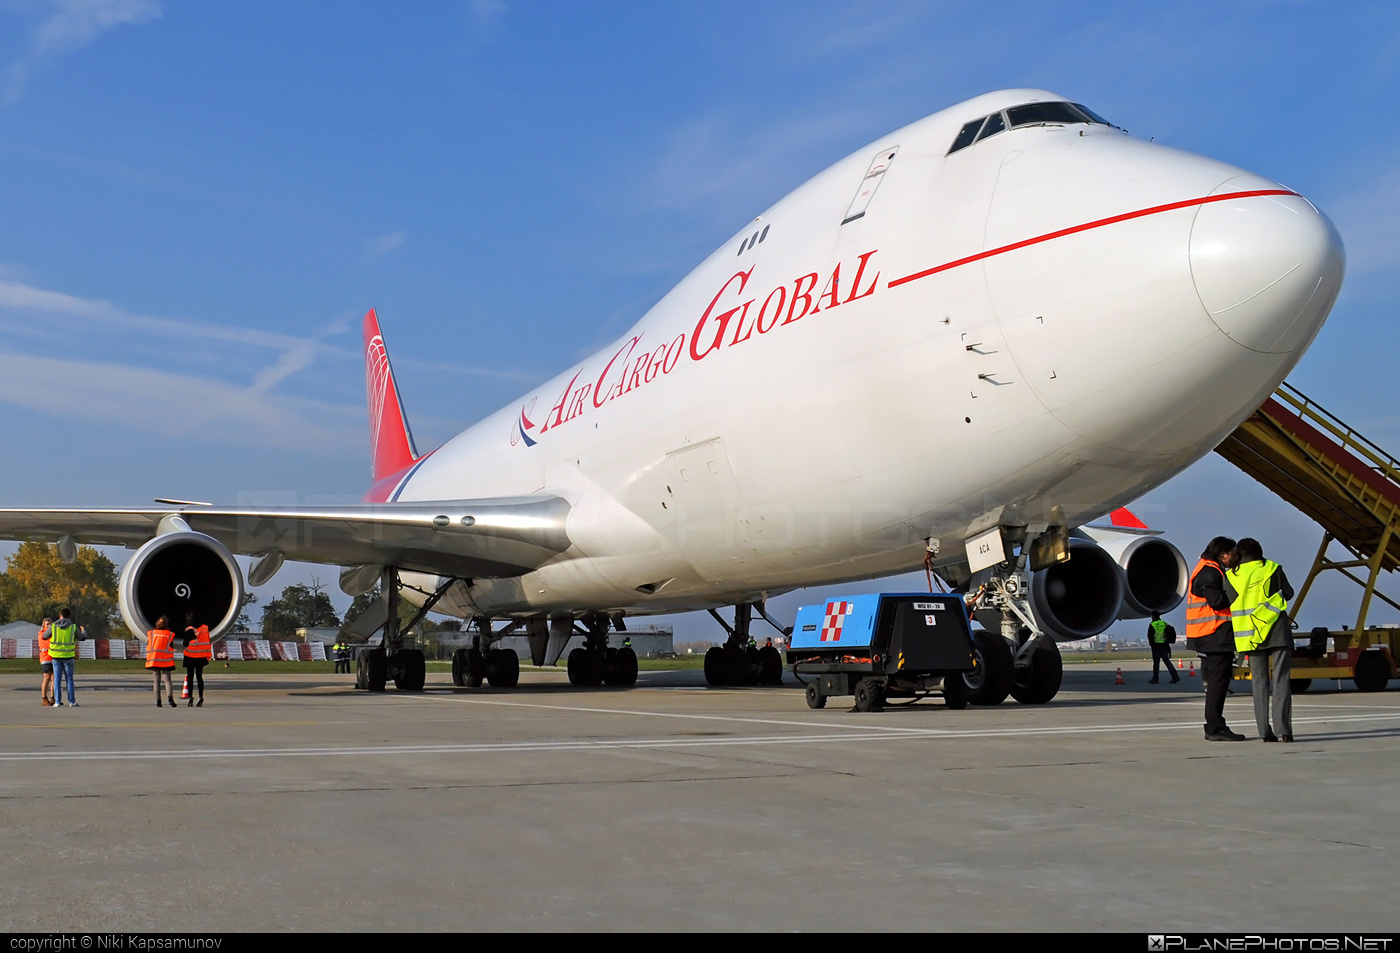 Boeing 747-400F - OM-ACA operated by Air Cargo Global #b747 #boeing #boeing747 #jumbo